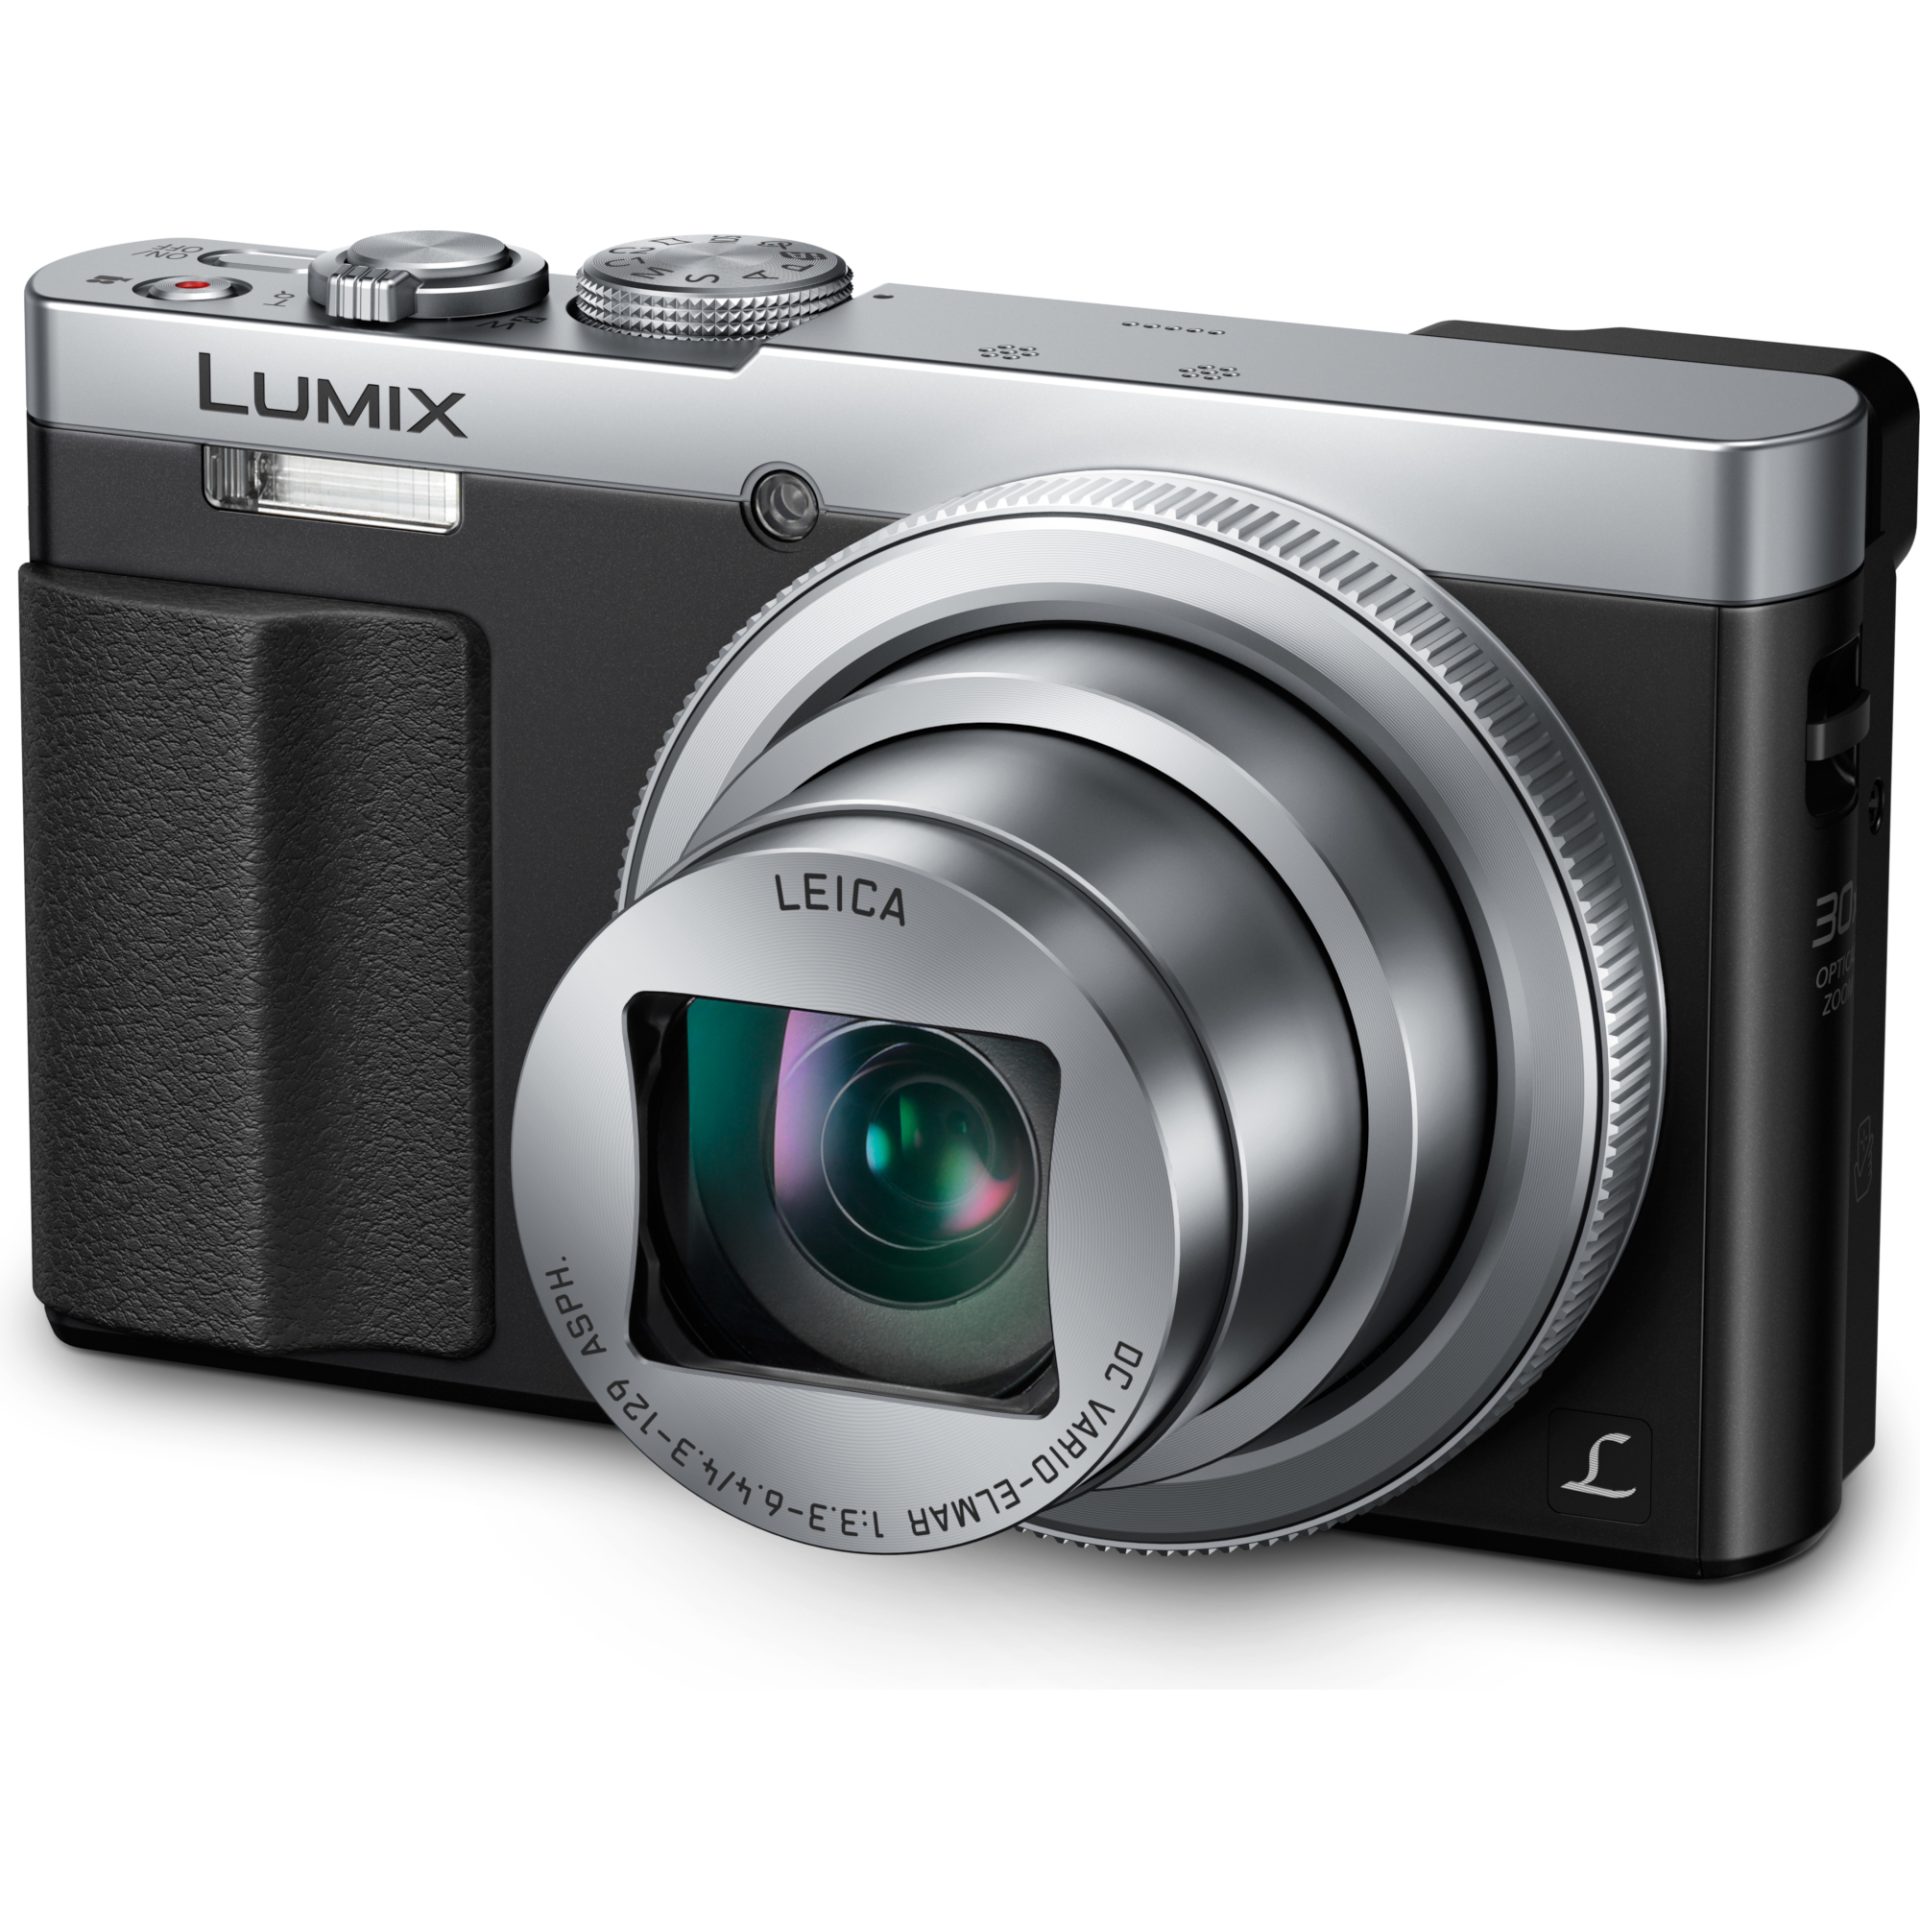 Panasonic DMC-TZ70 Lumix kompaktní fotoaparát s objektivem Leica DC Vario-Elmar 24mm (12.1MP MOS senzor, 30x zoom, LVF hledáček, Full HD video), stříb